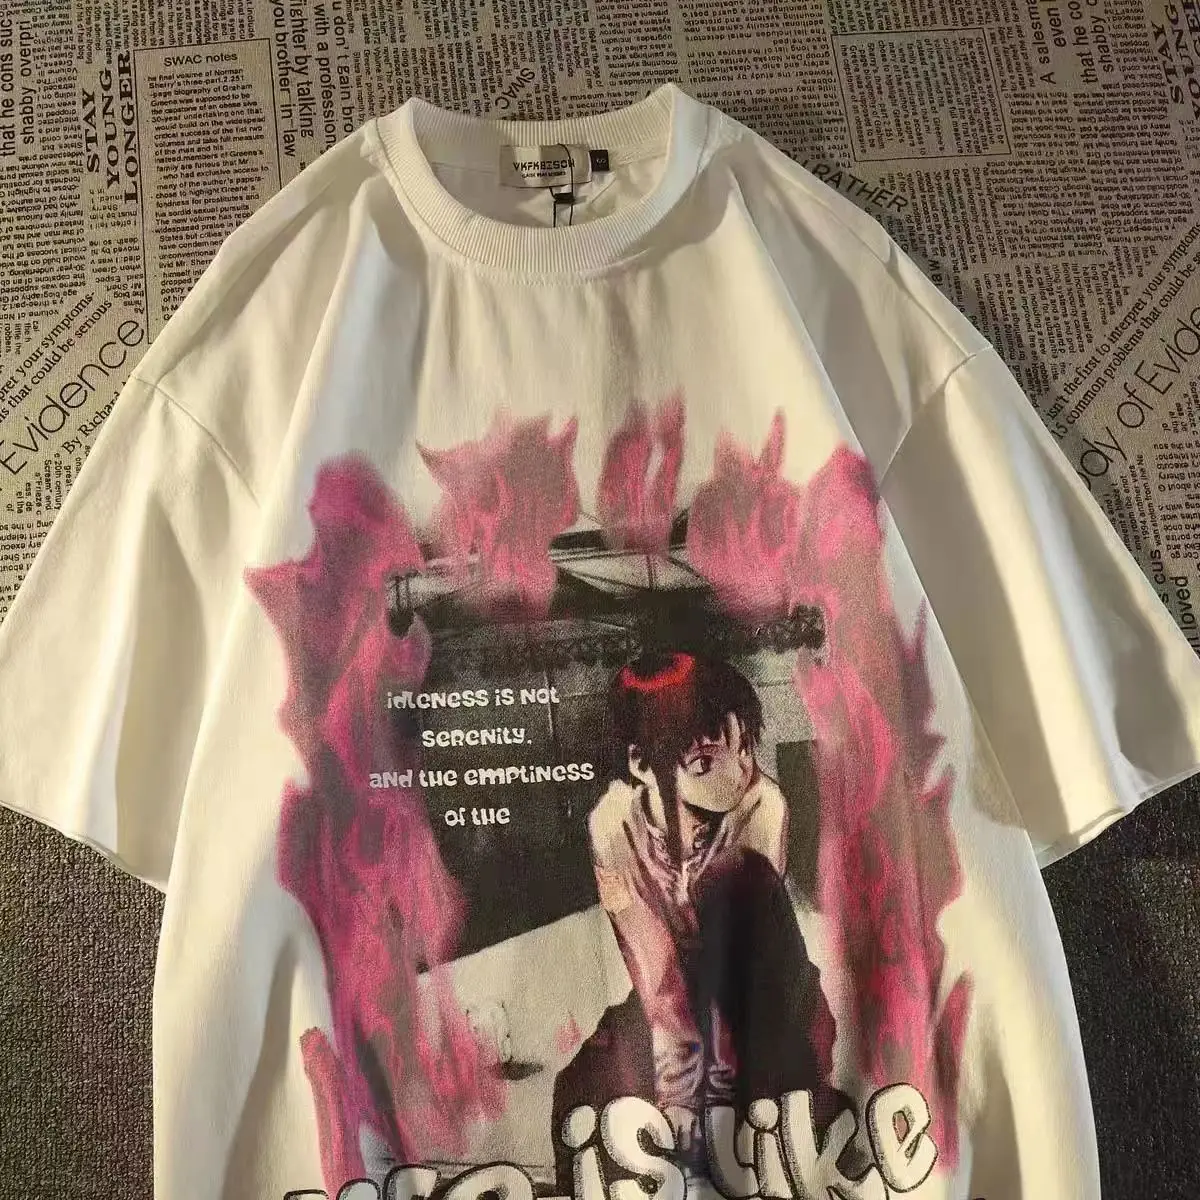 

Футболка Goth в стиле панк/японская с графическим принтом, уличная одежда, свободная футболка в стиле хип-хоп, топ в американском ретро стиле Х...